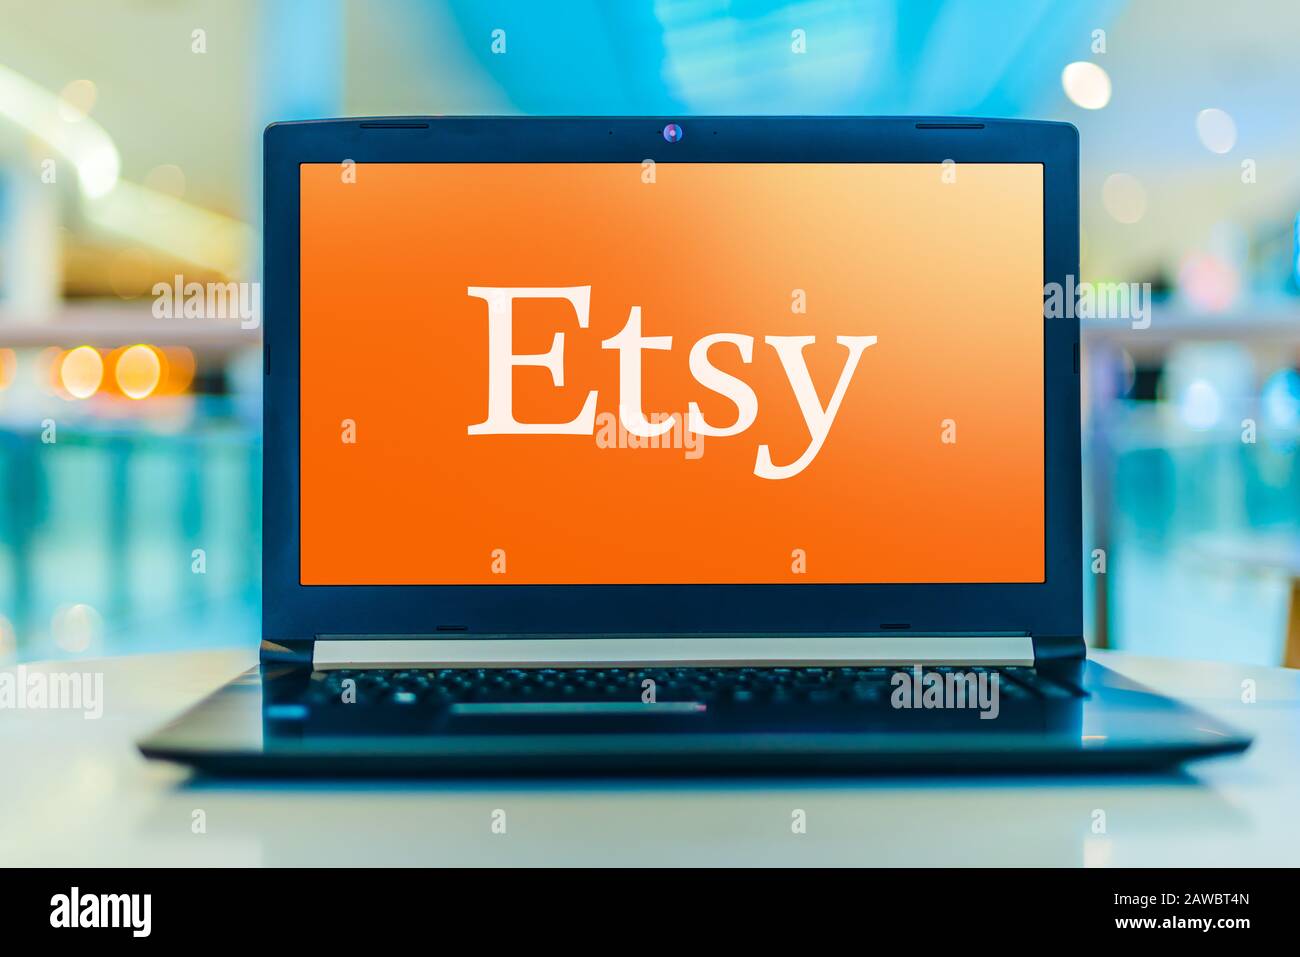 Poznan, POL - 30 JANVIER 2020: Ordinateur portable affichant le logo d'Etsy, un site Web de commerce électronique axé sur les articles faits à la main ou d'époque et les fournitures d'artisanat Banque D'Images